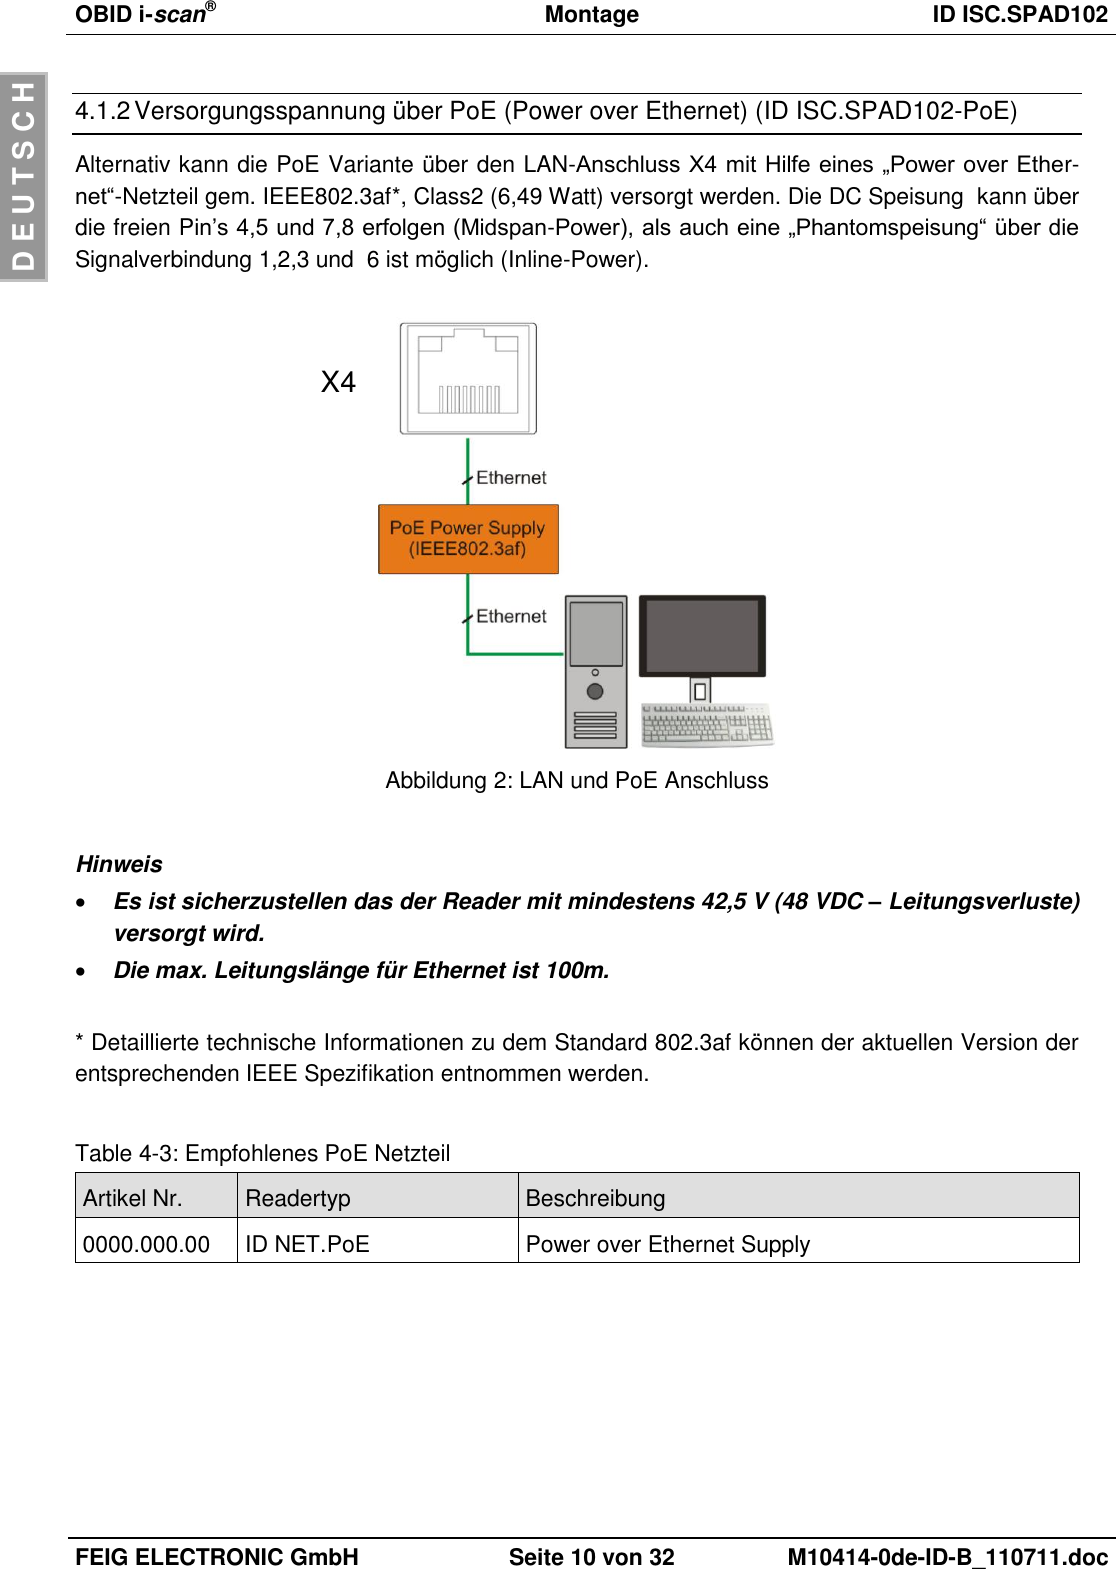 OBID i-scan®  Montage ID ISC.SPAD102  FEIG ELECTRONIC GmbH Seite 10 von 32 M10414-0de-ID-B_110711.doc  D E U T S C H 4.1.2 Versorgungsspannung über PoE (Power over Ethernet) (ID ISC.SPAD102-PoE) Alternativ kann die PoE Variante über den LAN-Anschluss X4 mit Hilfe eines „Power over Ether-net“-Netzteil gem. IEEE802.3af*, Class2 (6,49 Watt) versorgt werden. Die DC Speisung  kann über die freien Pin’s 4,5 und 7,8 erfolgen (Midspan-Power), als auch eine „Phantomspeisung“ über die Signalverbindung 1,2,3 und  6 ist möglich (Inline-Power).    Abbildung 2: LAN und PoE Anschluss  Hinweis  Es ist sicherzustellen das der Reader mit mindestens 42,5 V (48 VDC – Leitungsverluste) versorgt wird.  Die max. Leitungslänge für Ethernet ist 100m.  * Detaillierte technische Informationen zu dem Standard 802.3af können der aktuellen Version der entsprechenden IEEE Spezifikation entnommen werden.  Table 4-3: Empfohlenes PoE Netzteil Artikel Nr. Readertyp Beschreibung 0000.000.00 ID NET.PoE Power over Ethernet Supply   X4 